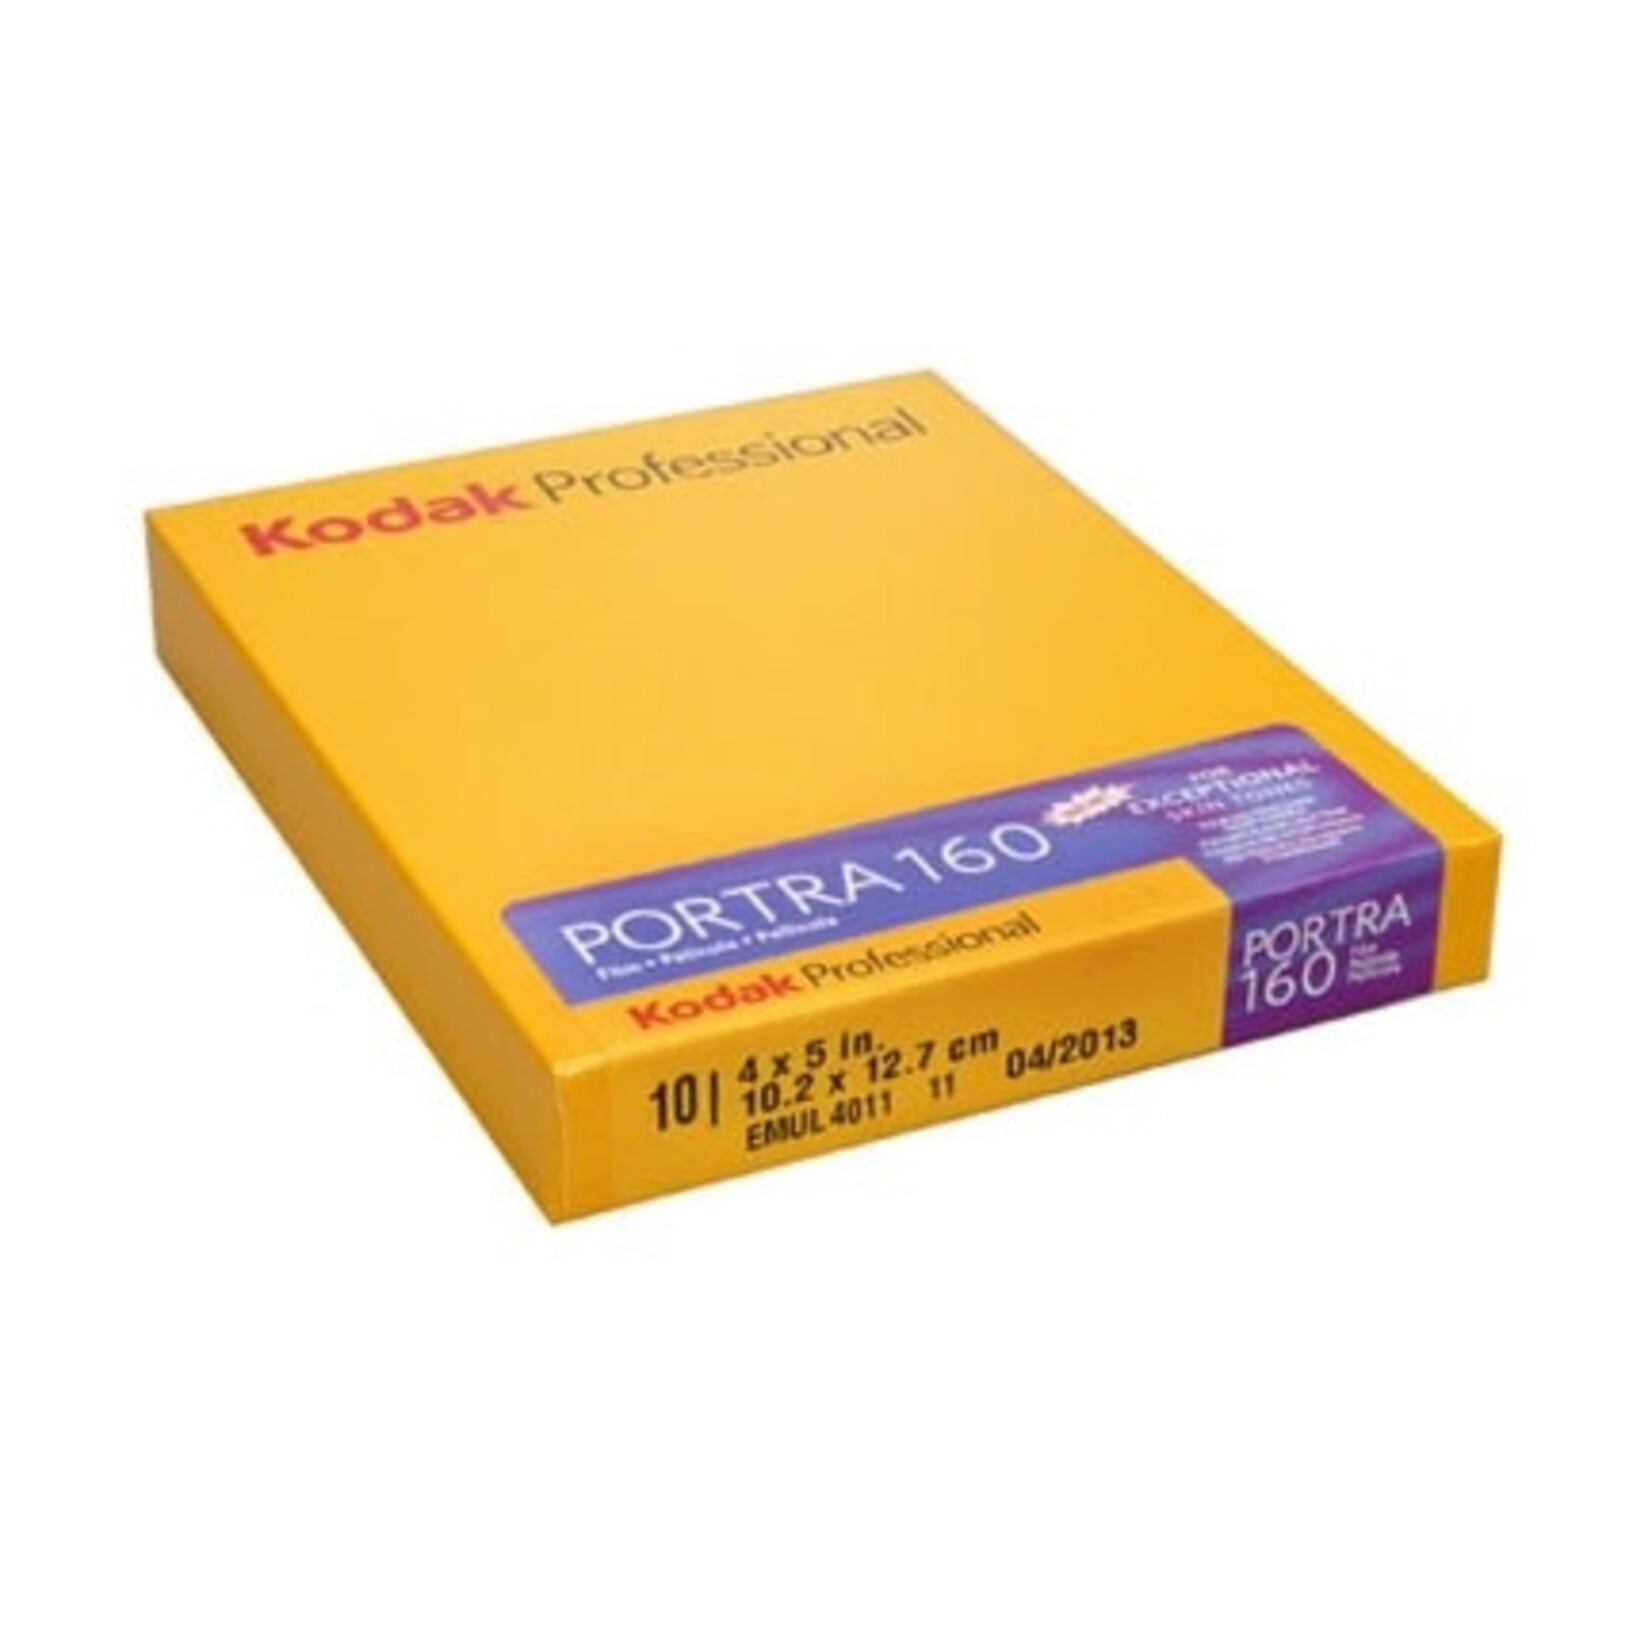 Kodak Kodak Portra 160 4x5 Color 10 Sheets